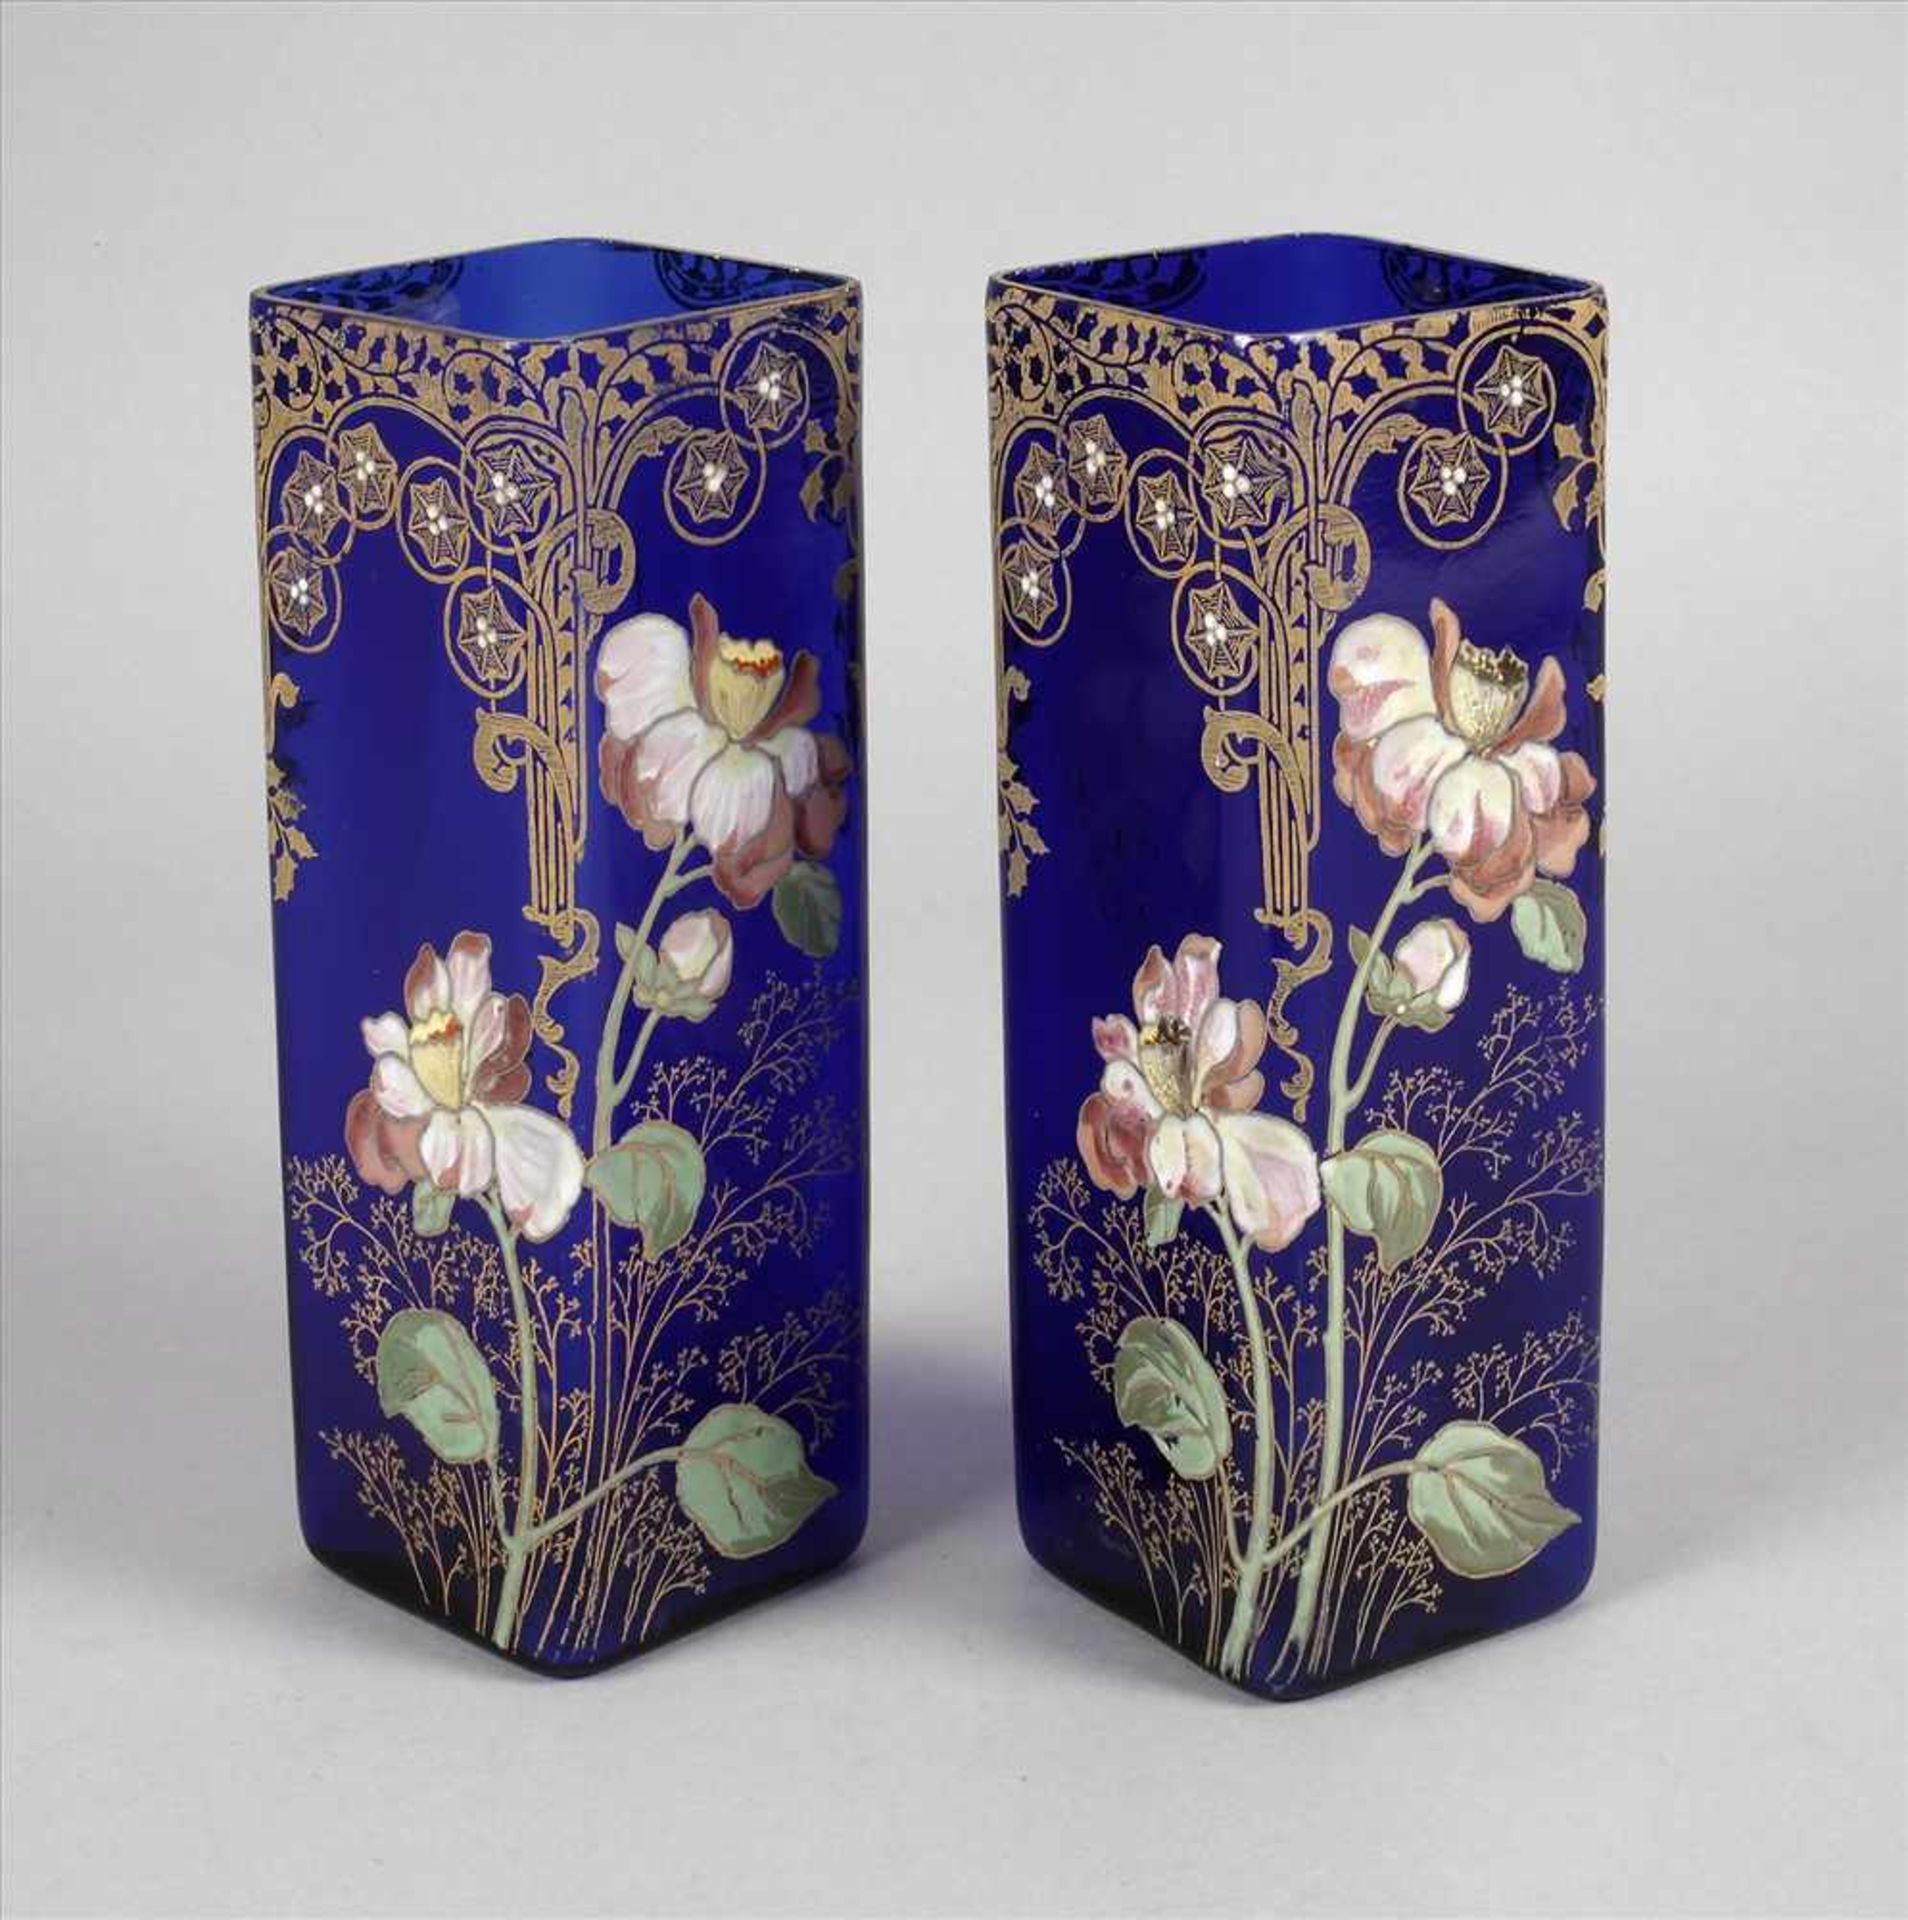 Paar Vasen Emaillemalereium 1900, kobaltblaues Glas formgeblasen, mit opaken Emaillefarben floral